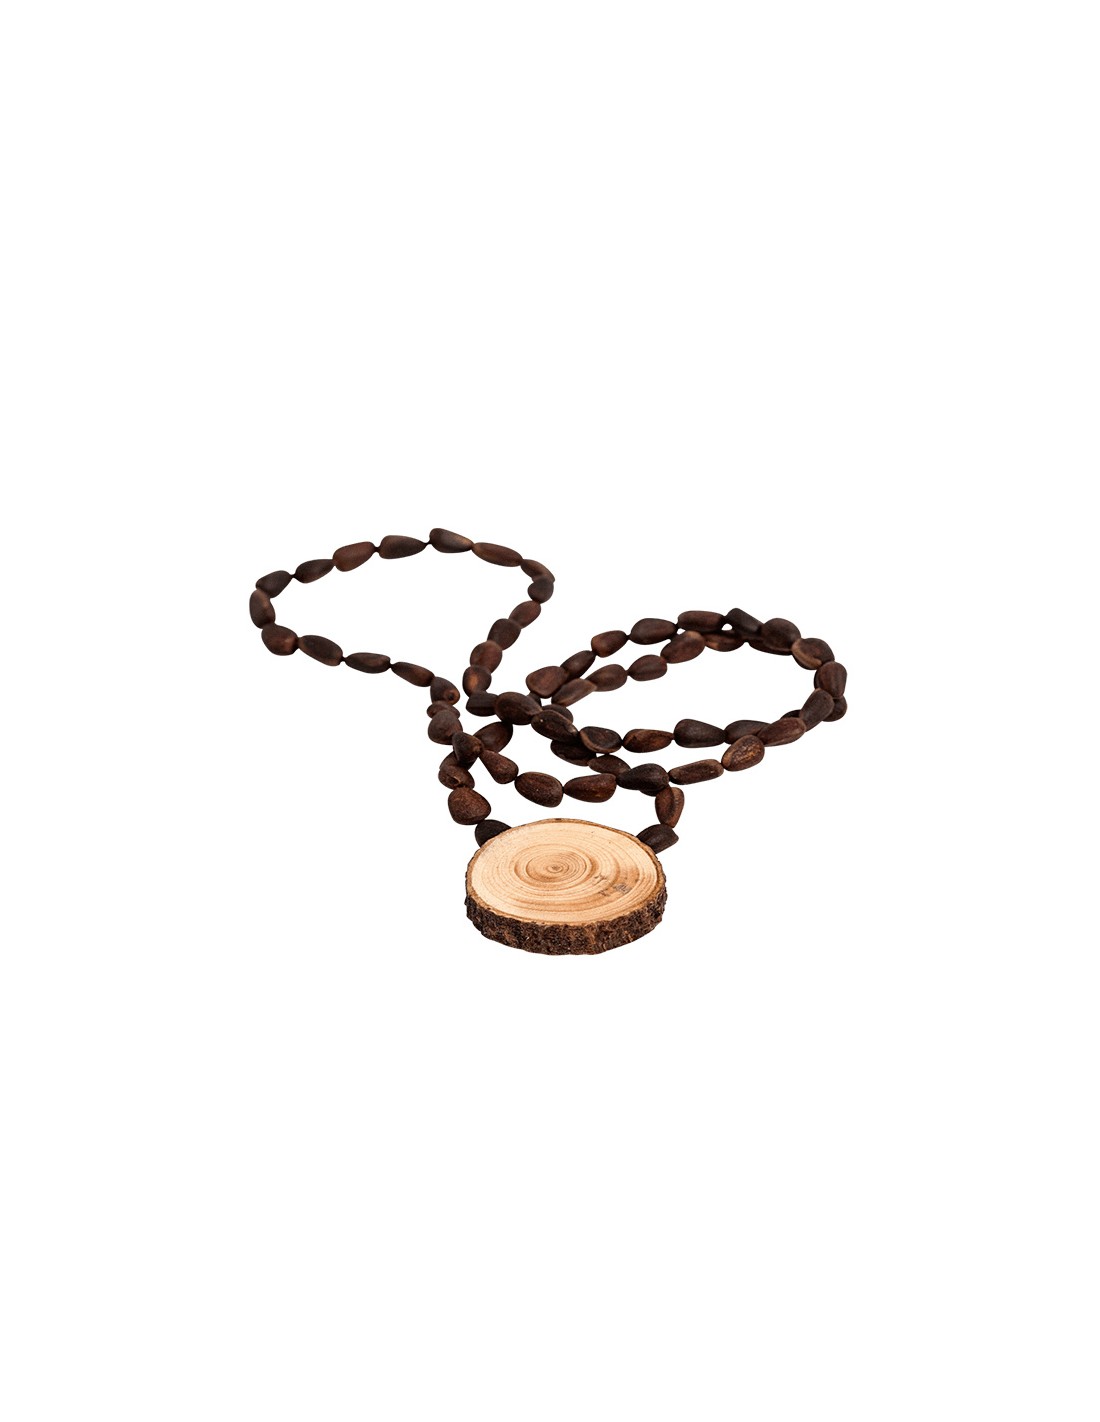 Cedar necklace